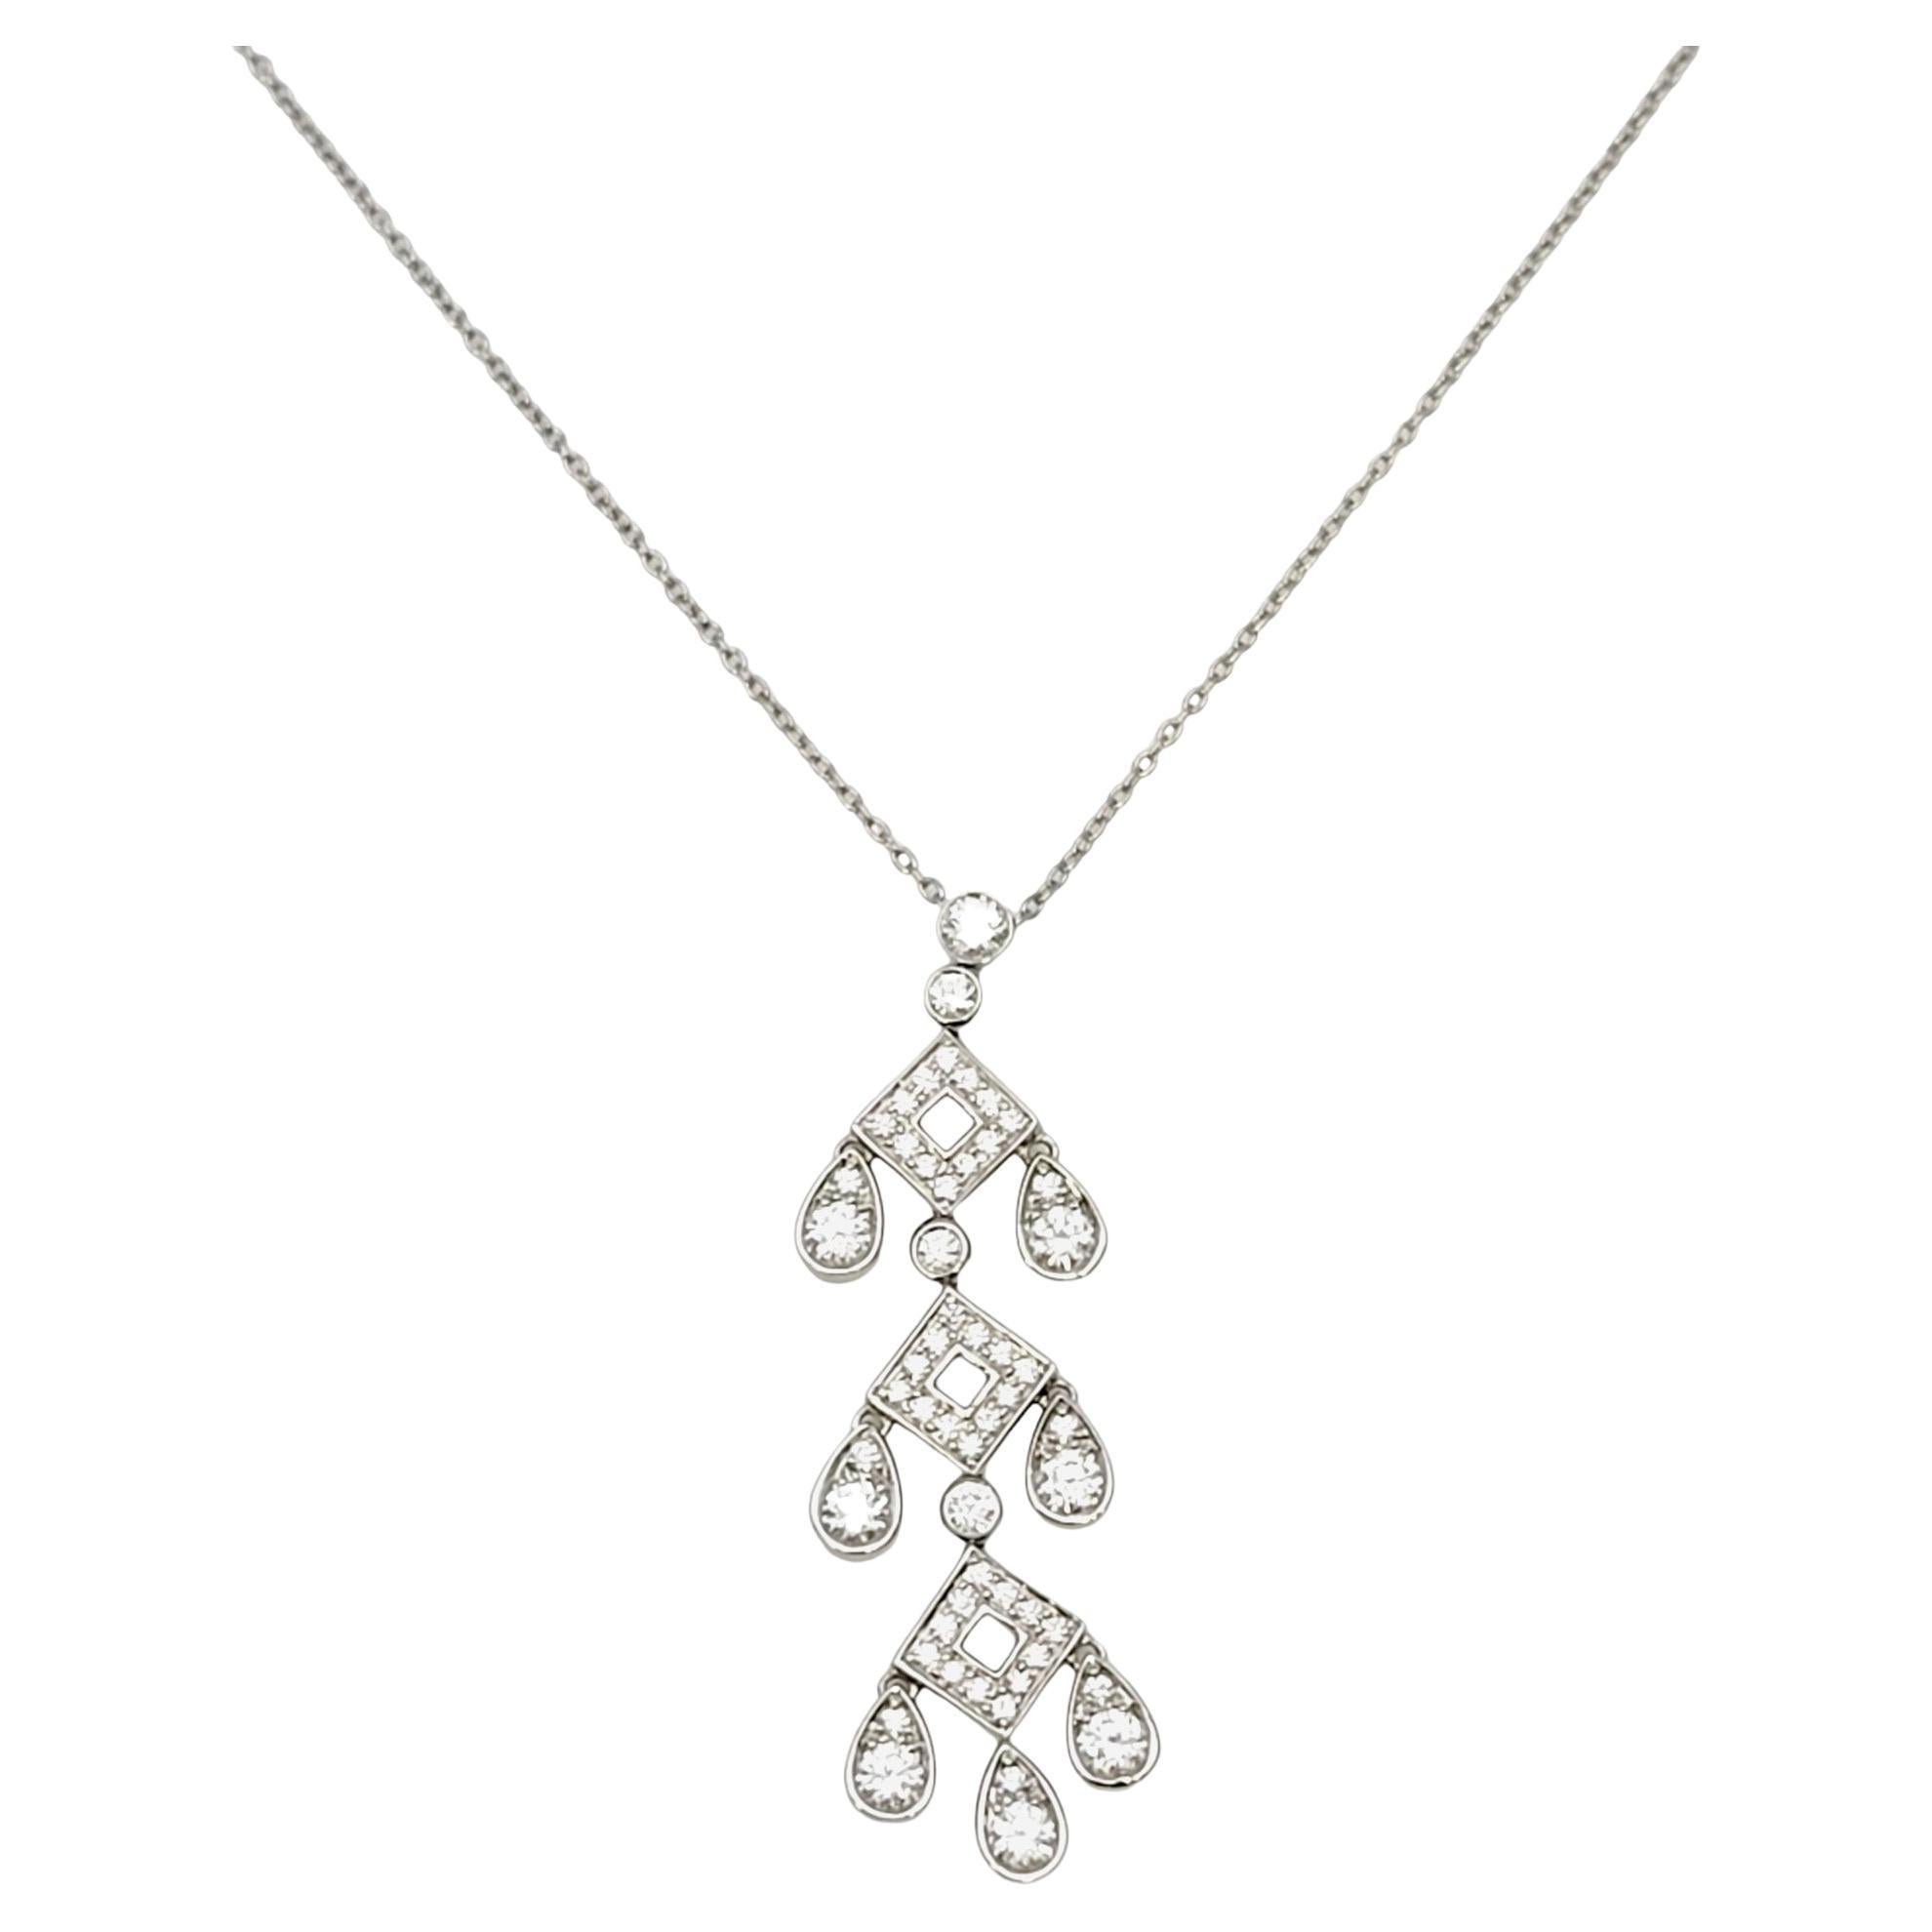 Cette étincelante pièce de Tiffany & Co. Le collier Jazz Pagoda en diamants est absolument magnifique. La délicate chaîne en platine et la goutte scintillante de diamants ronds naturels s'accordent avec à peu près tout. Trois maillons ouverts en